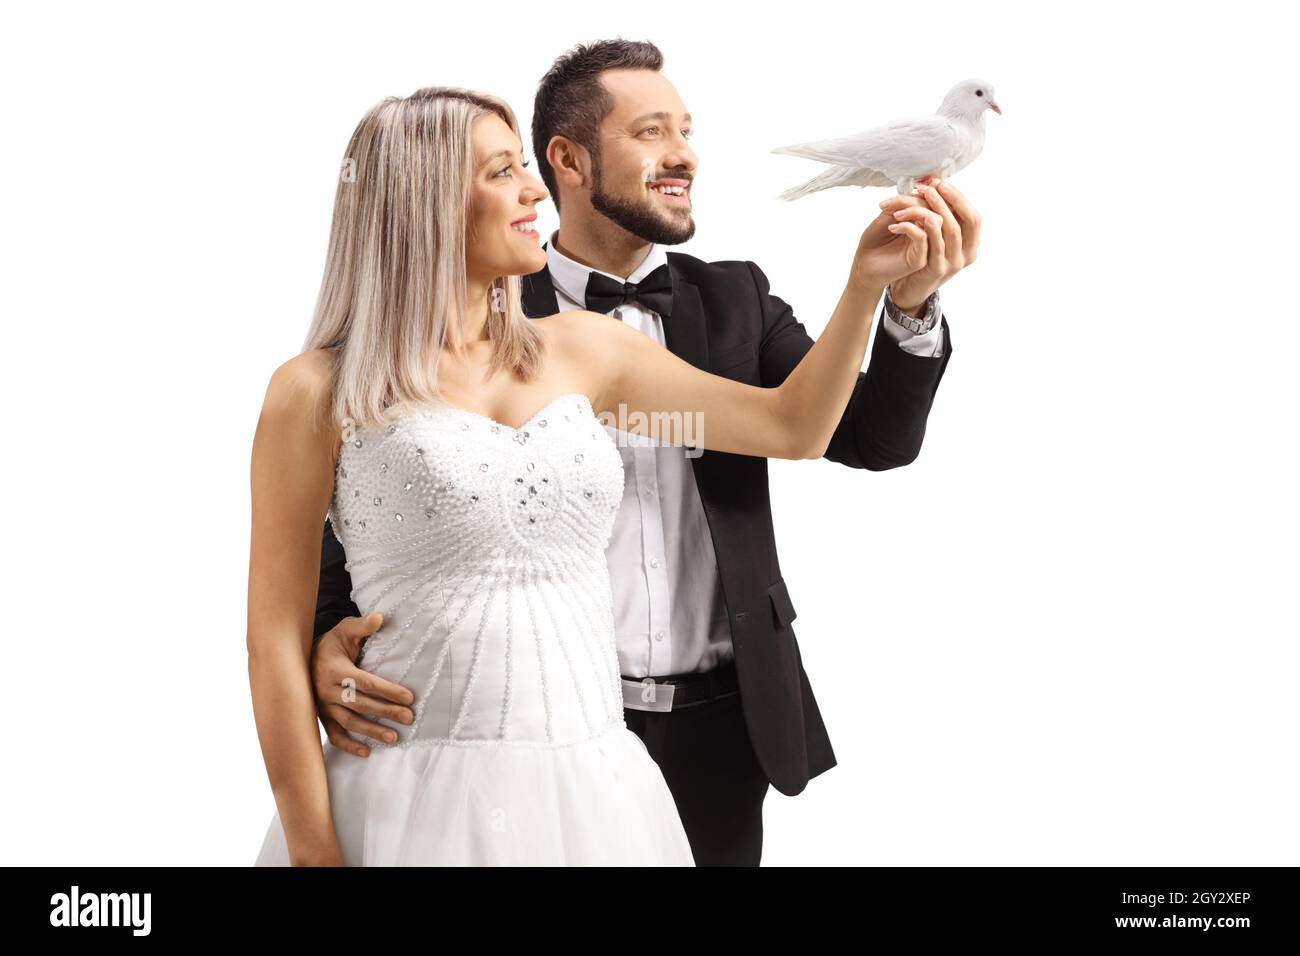 Profilo di sposa e sposo che tiene una colomba bianca isolato su sfondo bianco Foto Stock